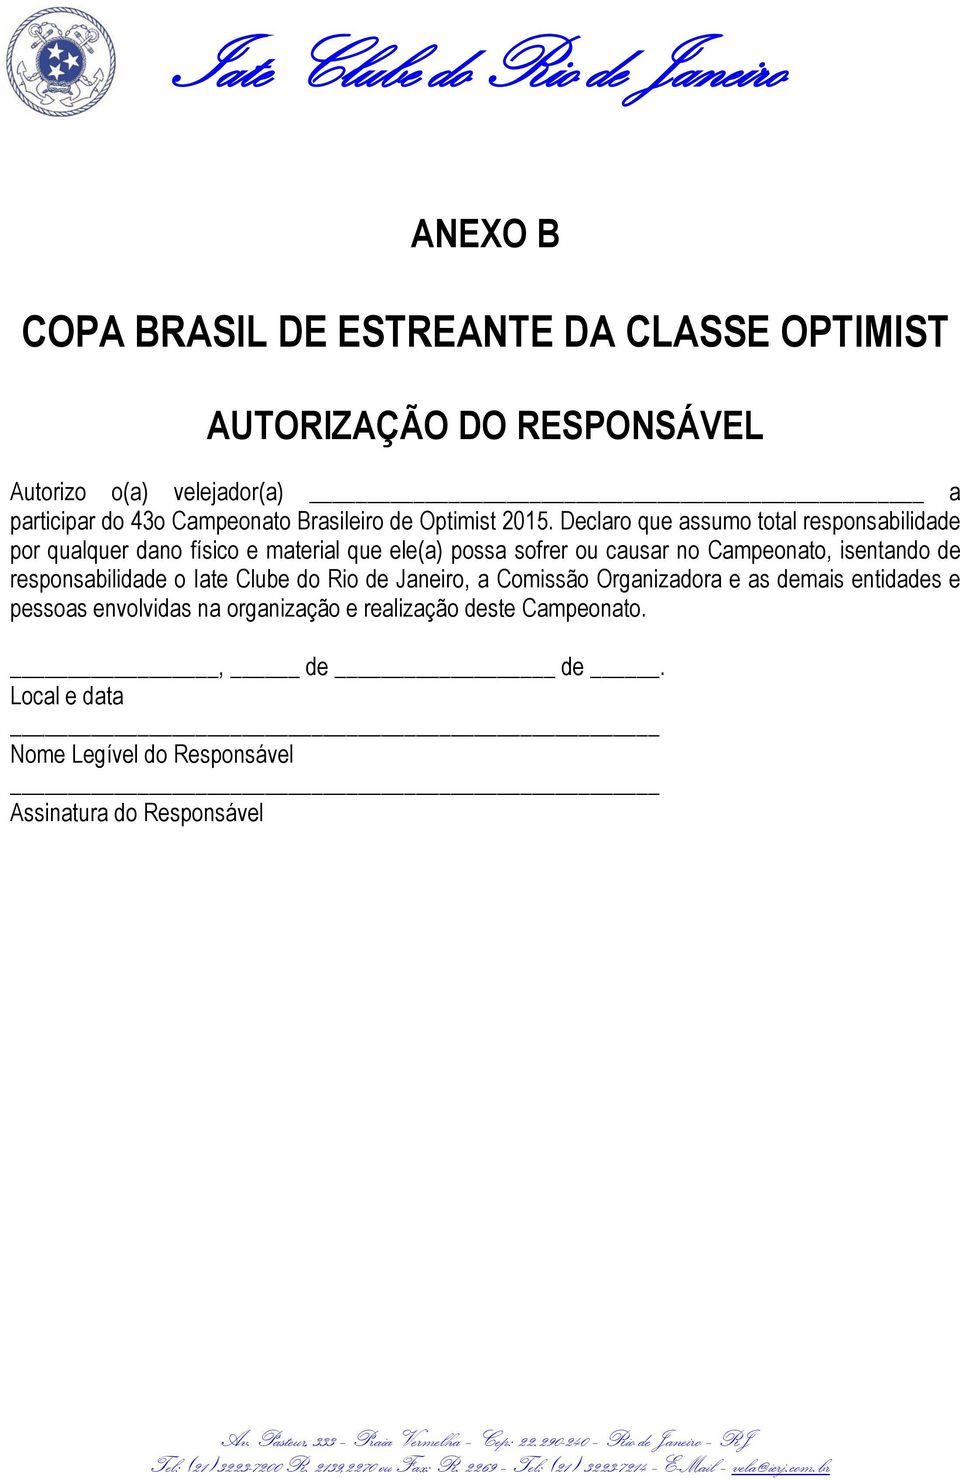 Campeonato, isentando de responsabilidade o Iate Clube do Rio de Janeiro, a Comissão Organizadora e as demais entidades e